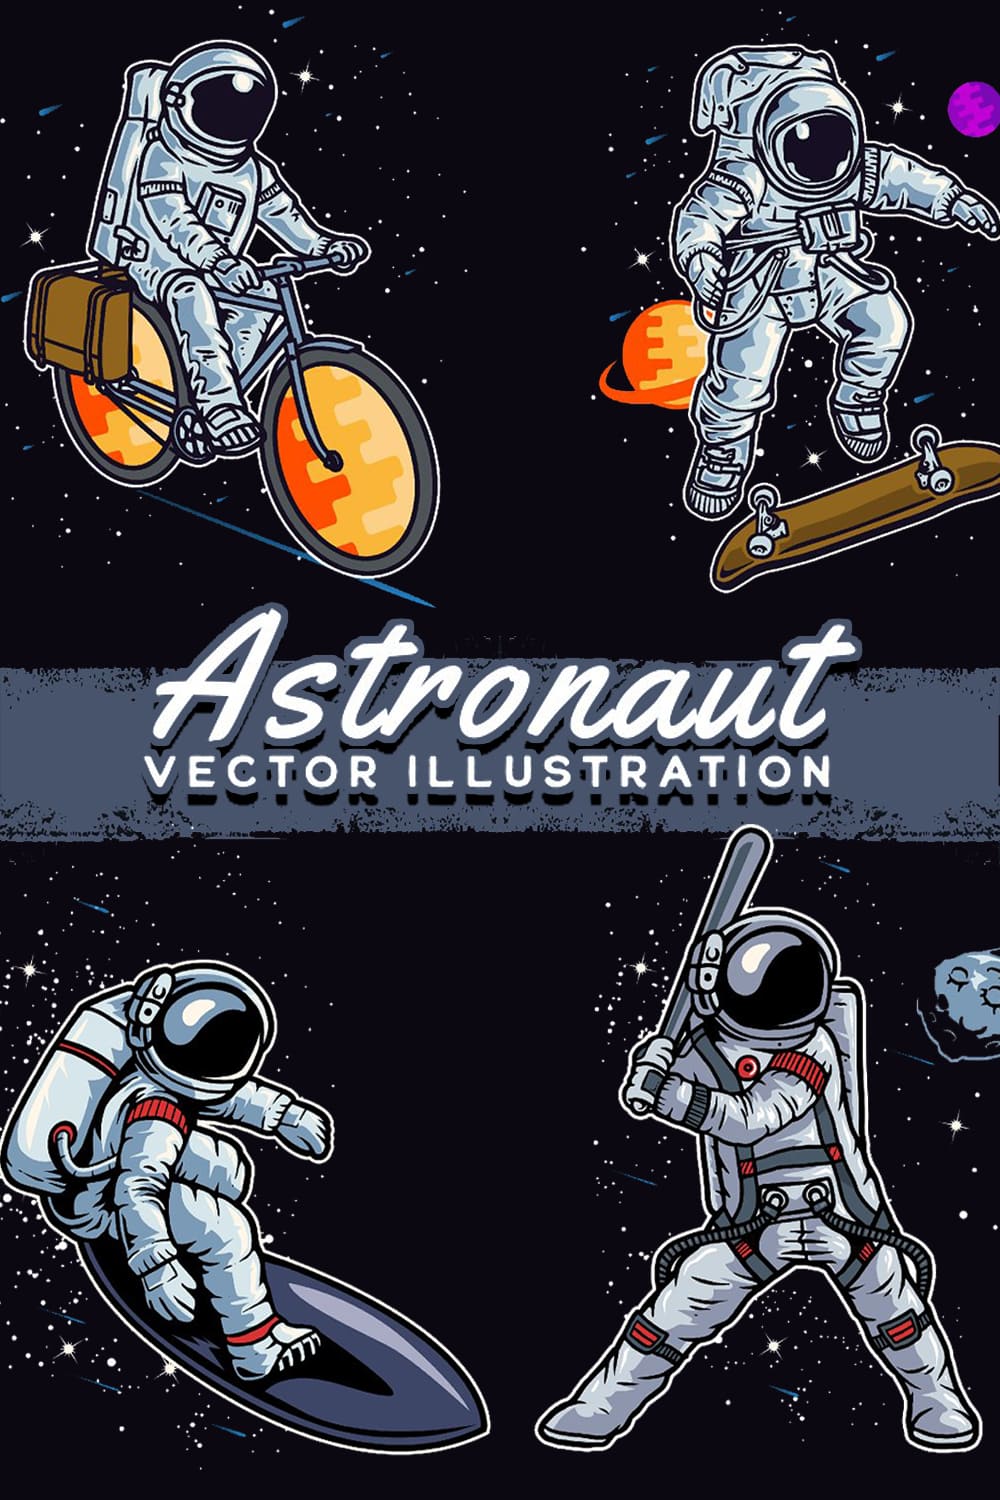 Astronaut Vector Illustration pinterest image.